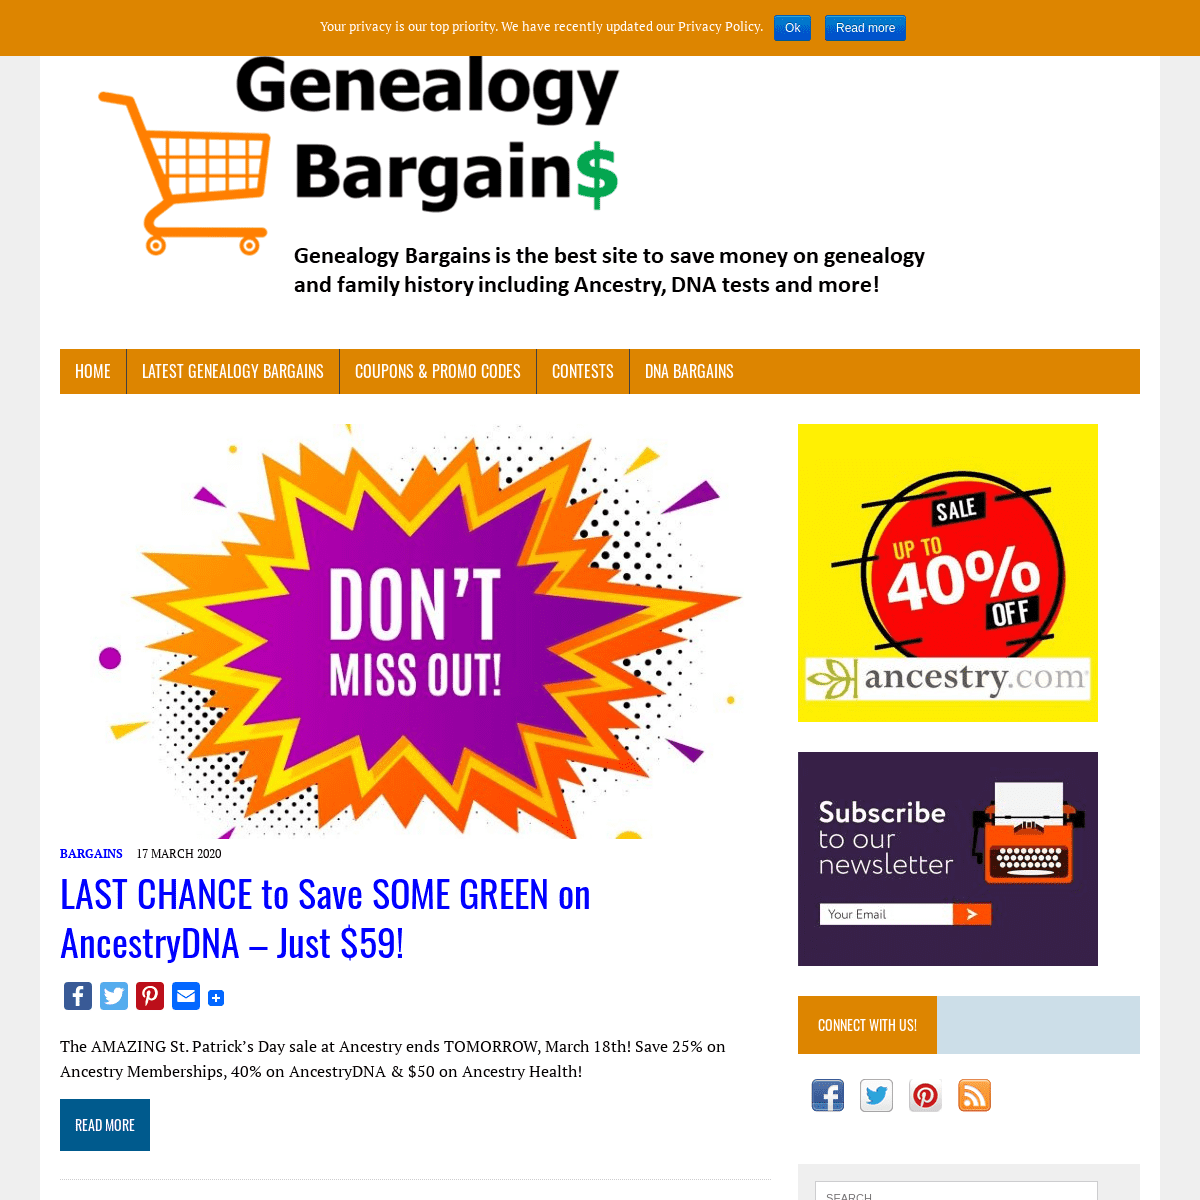 A complete backup of genealogybargains.com